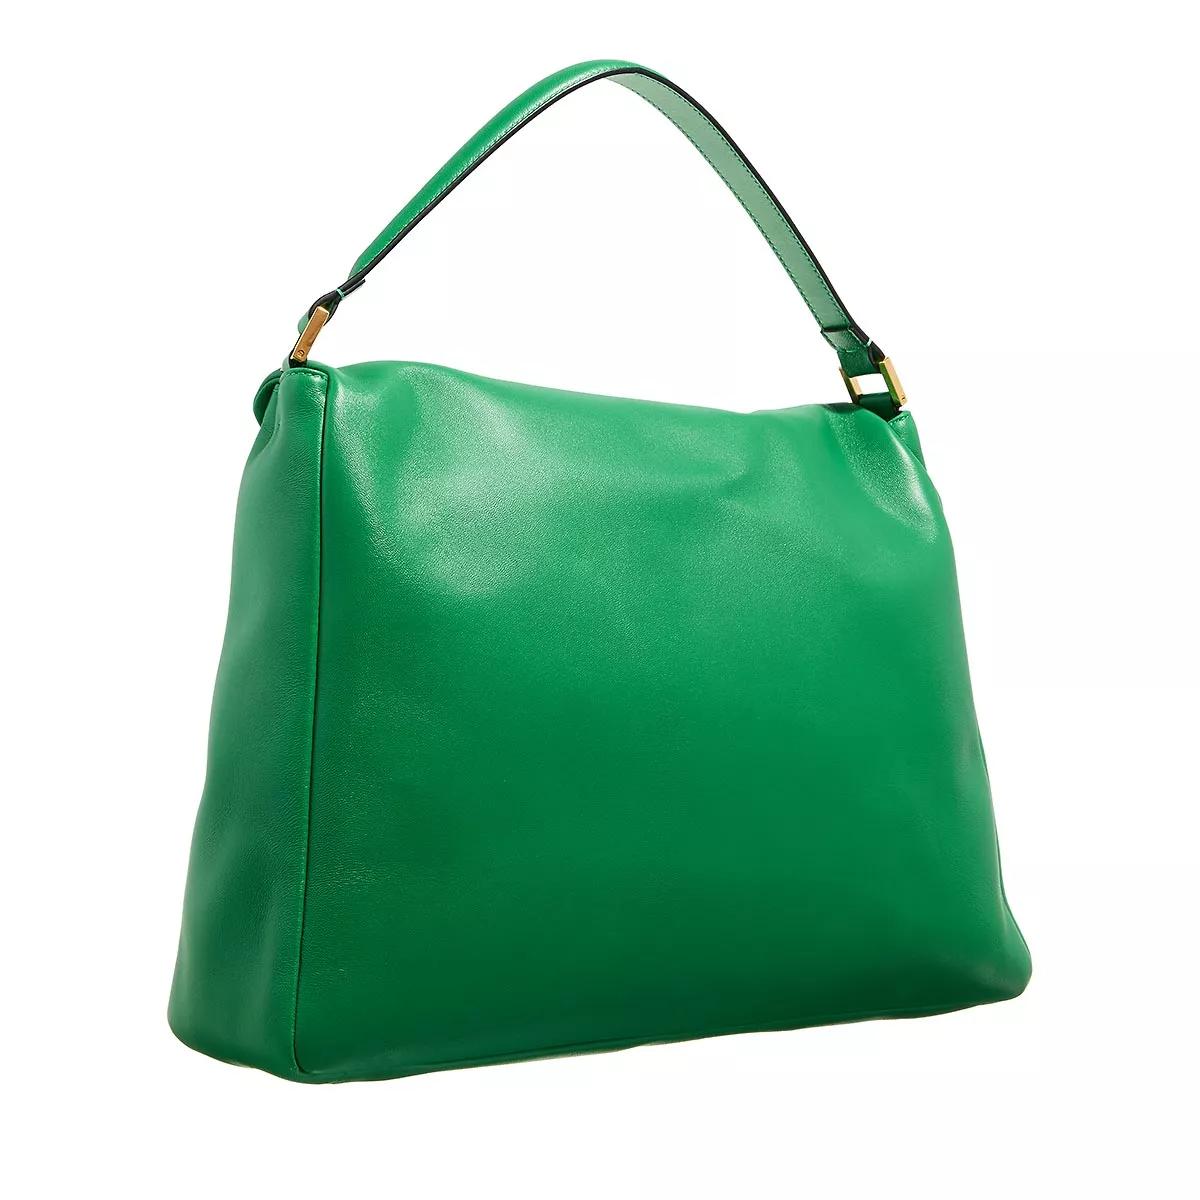 Valentino Garavani Satchels Rockstud Satchel Bag in groen